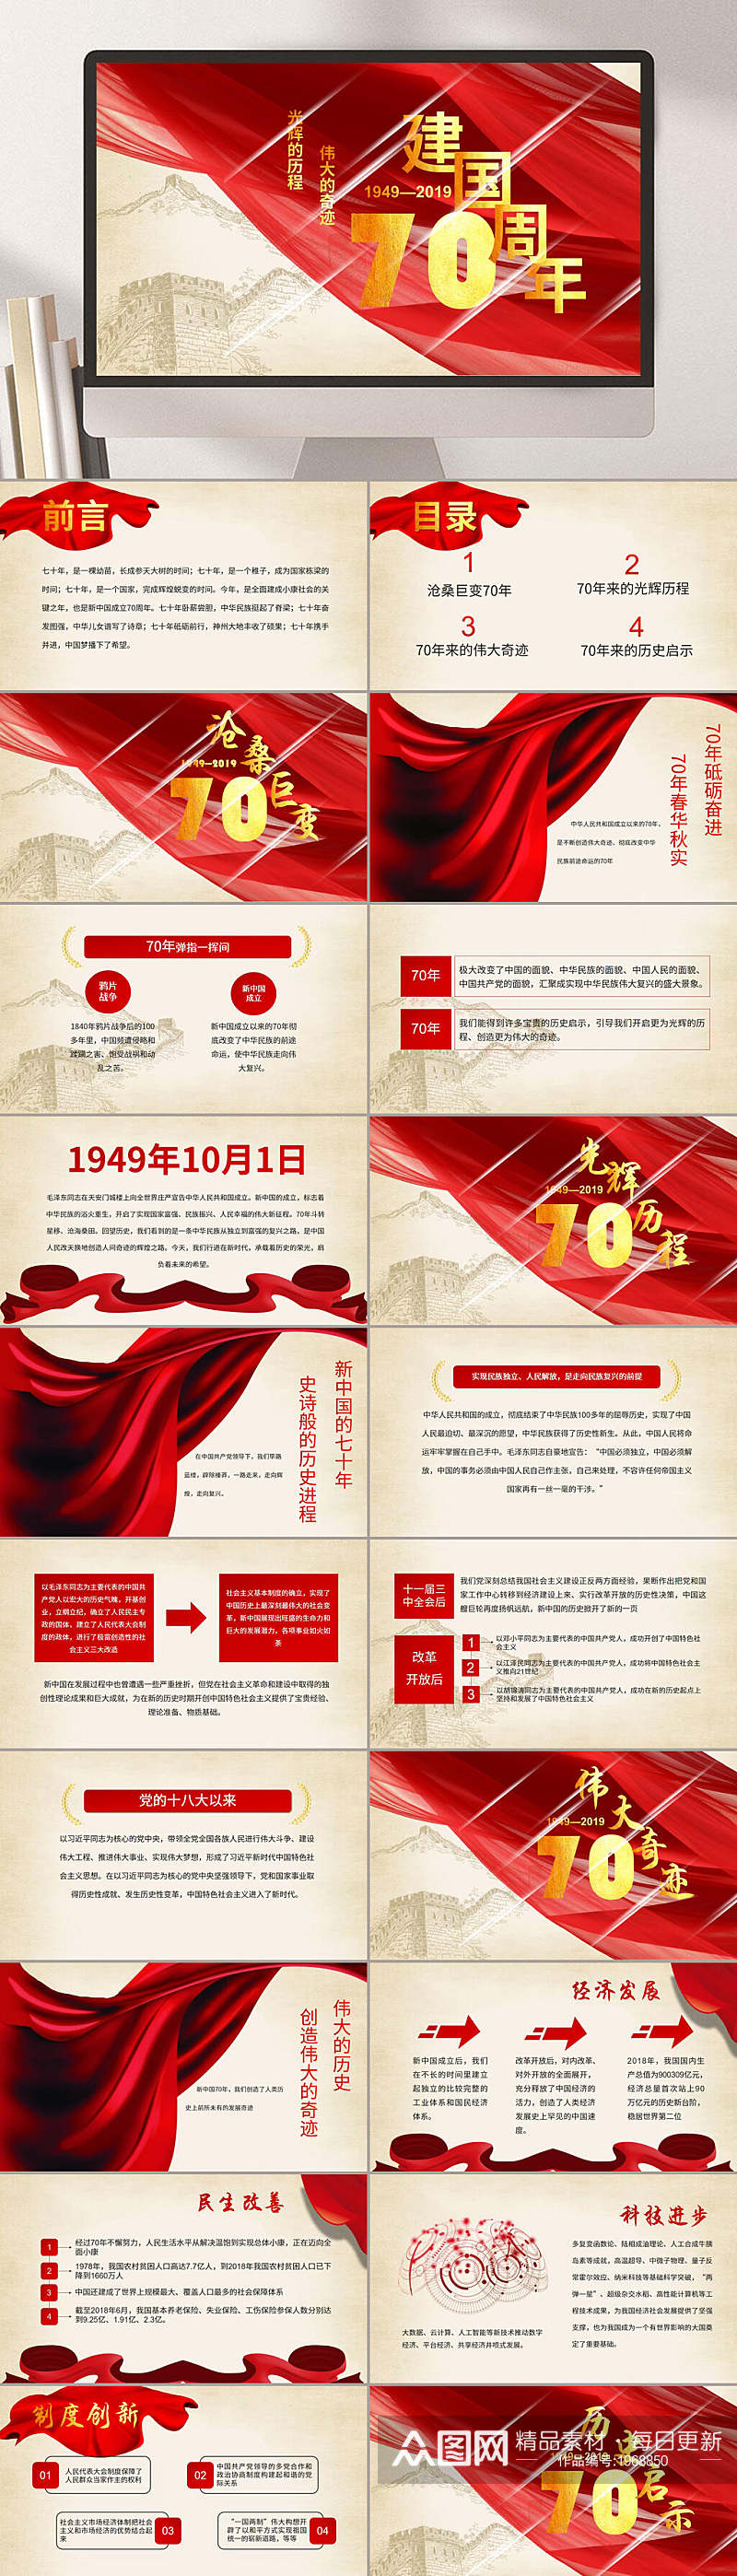 建国70周年红色主题国庆PPT素材